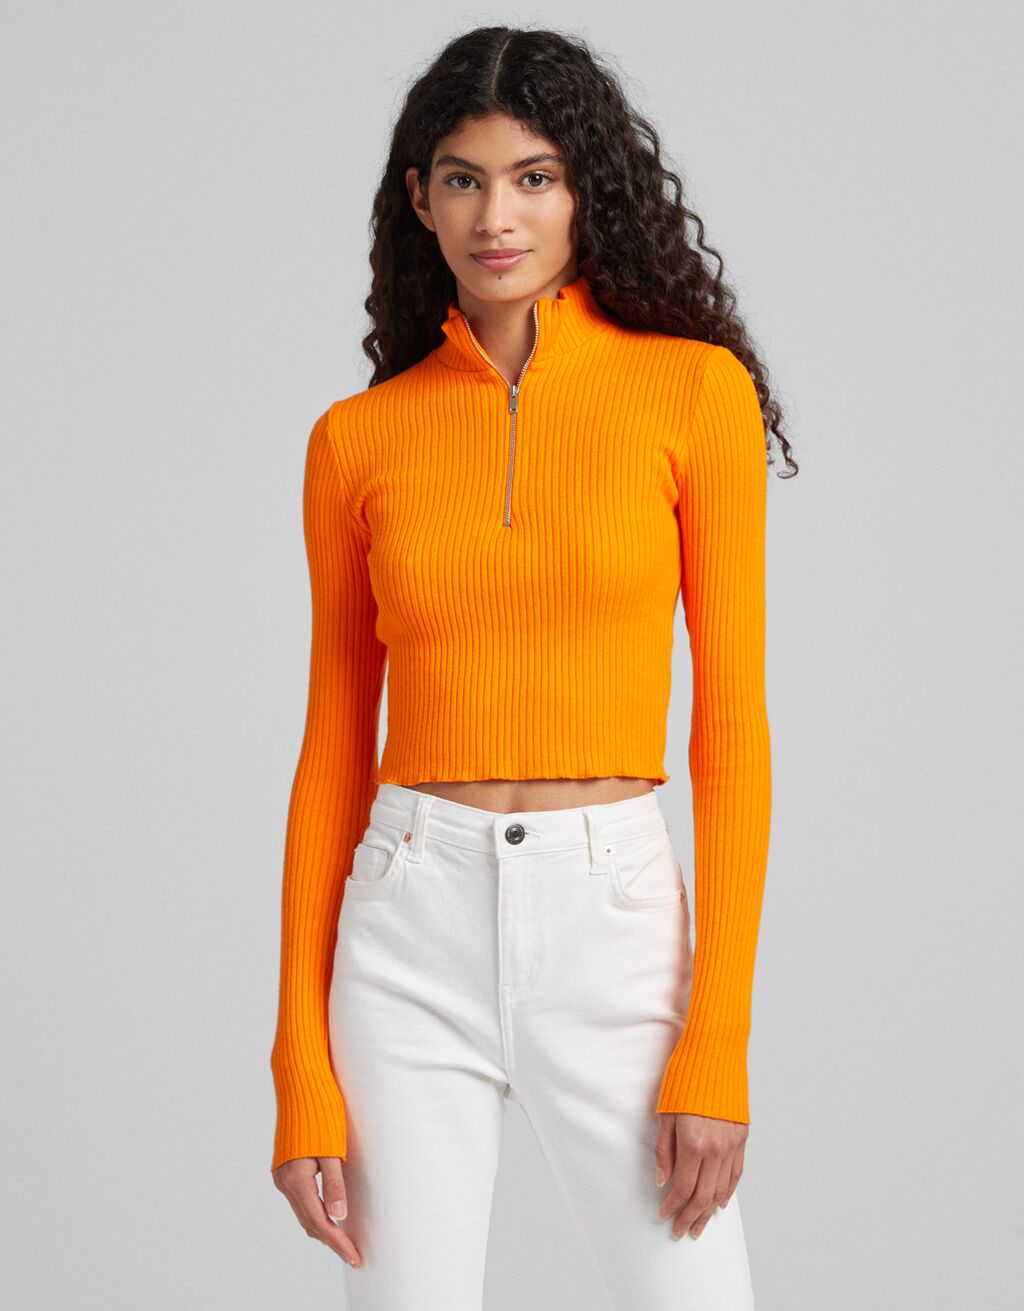 πορτοκαλί ριμπ μπλούζα με φερμουάρ